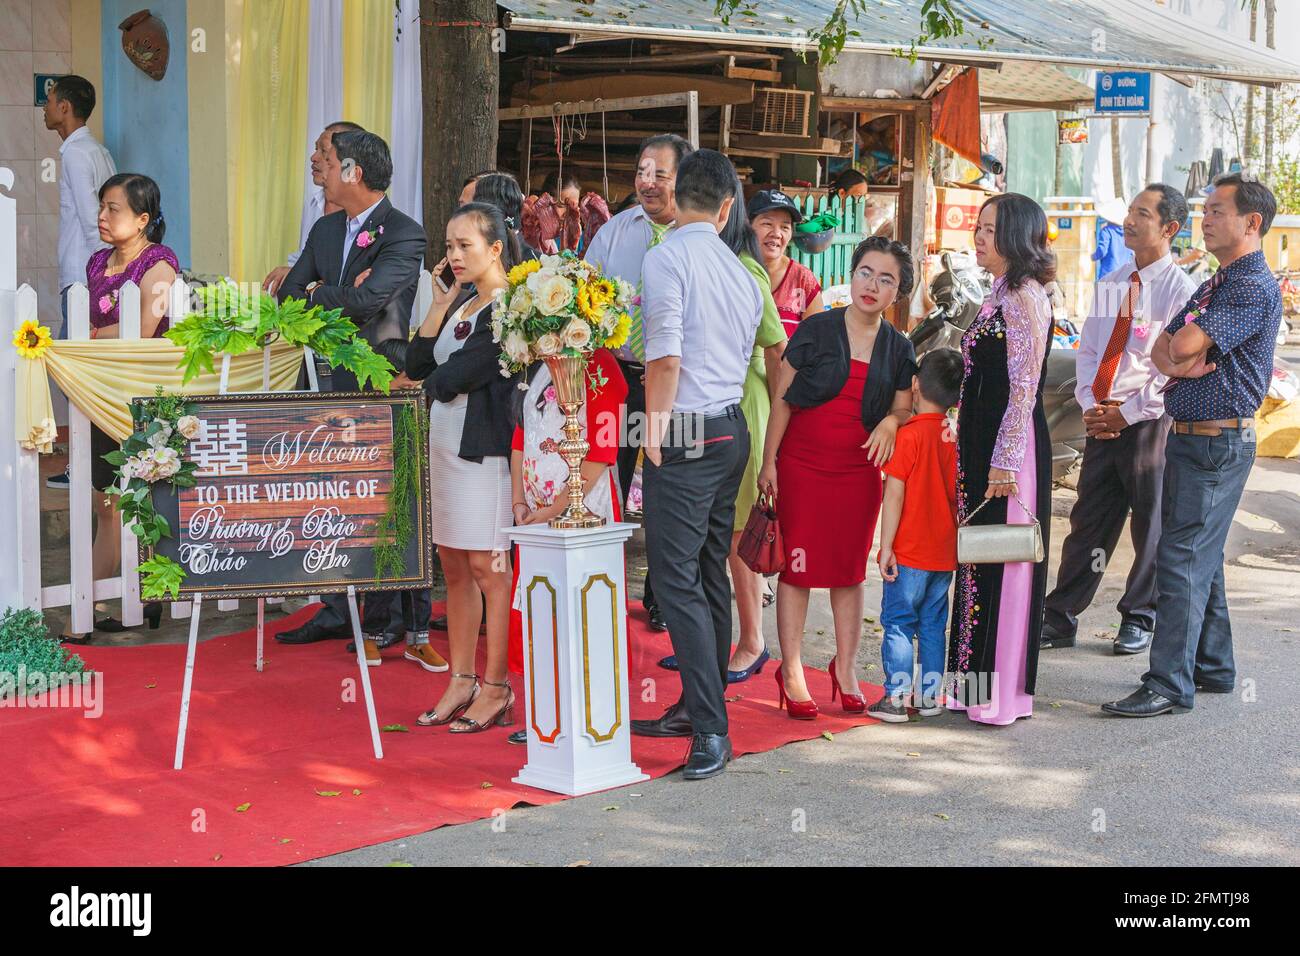 Vietnamesische Hochzeitsgäste, die Schlange stehen, um Zugang zu einem Hochzeitsempfang auf der Straße, Hoi an, Vietnam, zu erhalten Stockfoto